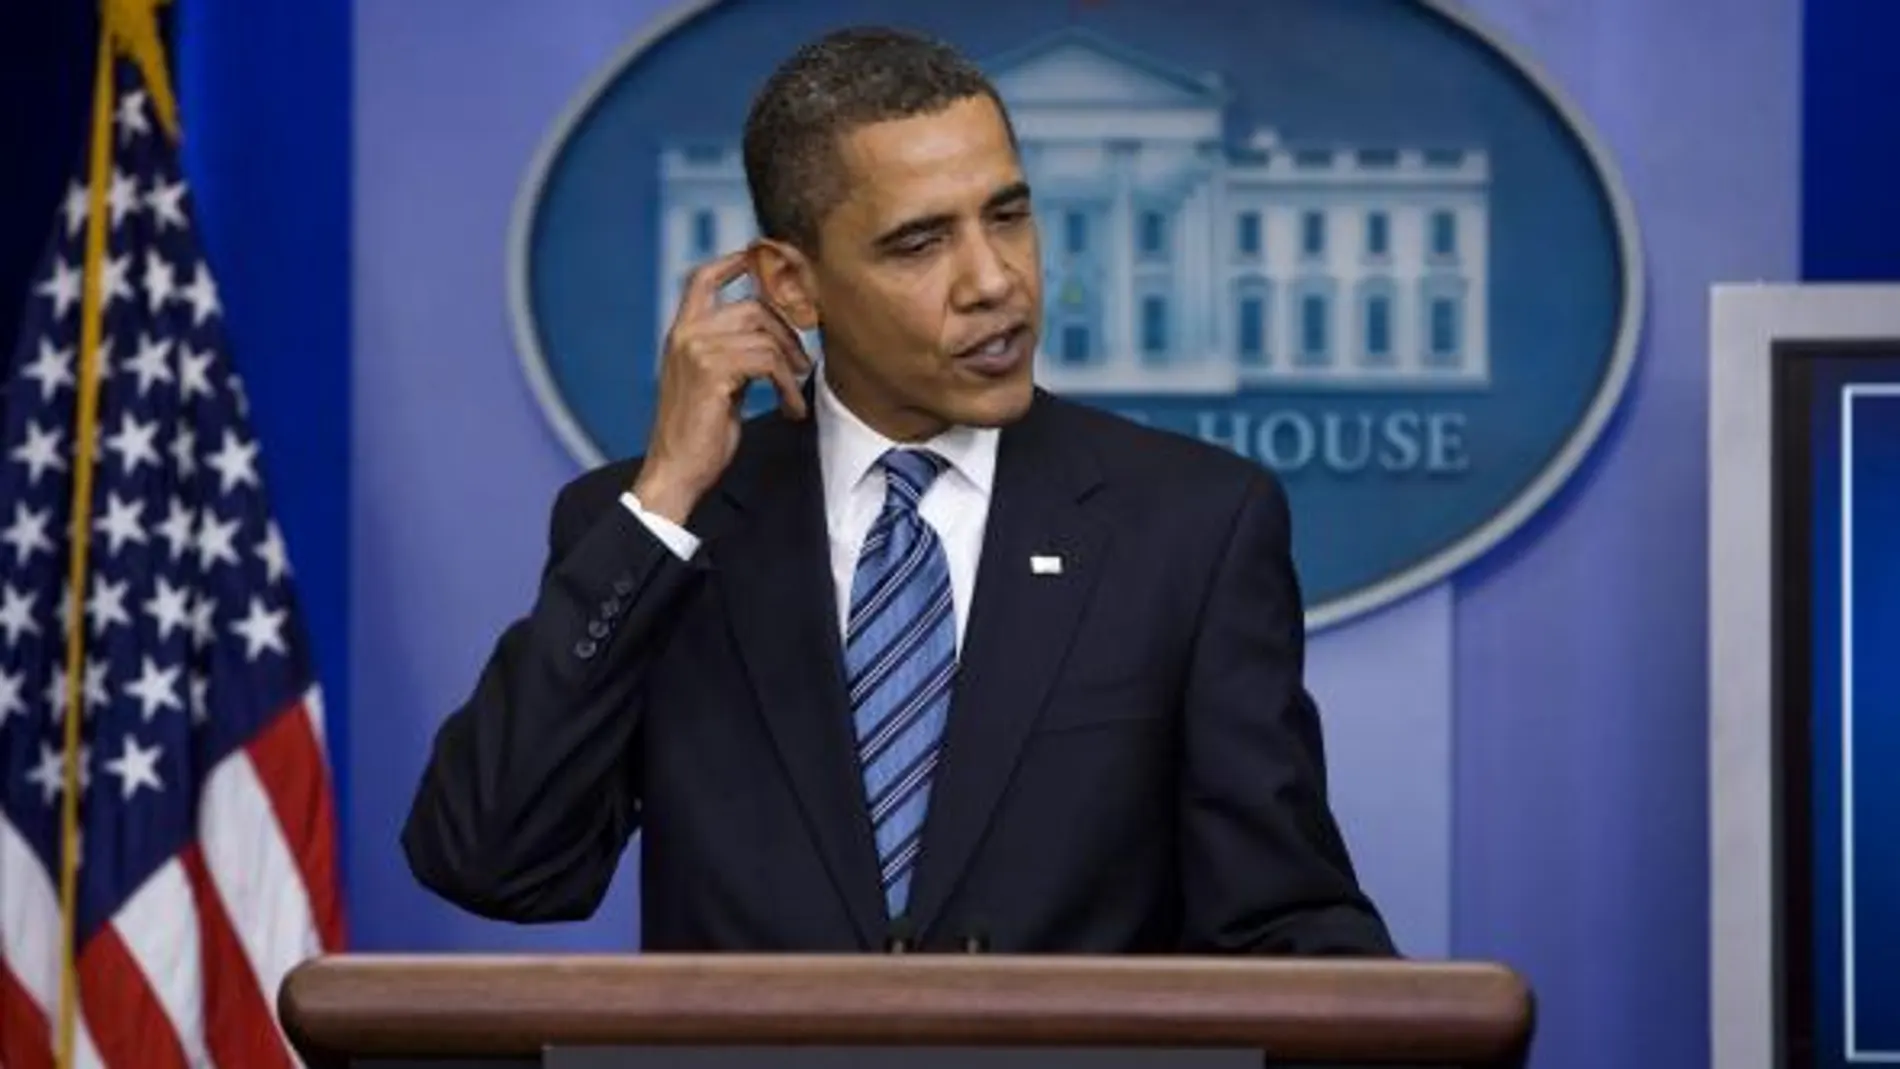 Obama llama por teléfono al sargento que detuvo a un profesor negro y reconoce que se equivocó de palabras